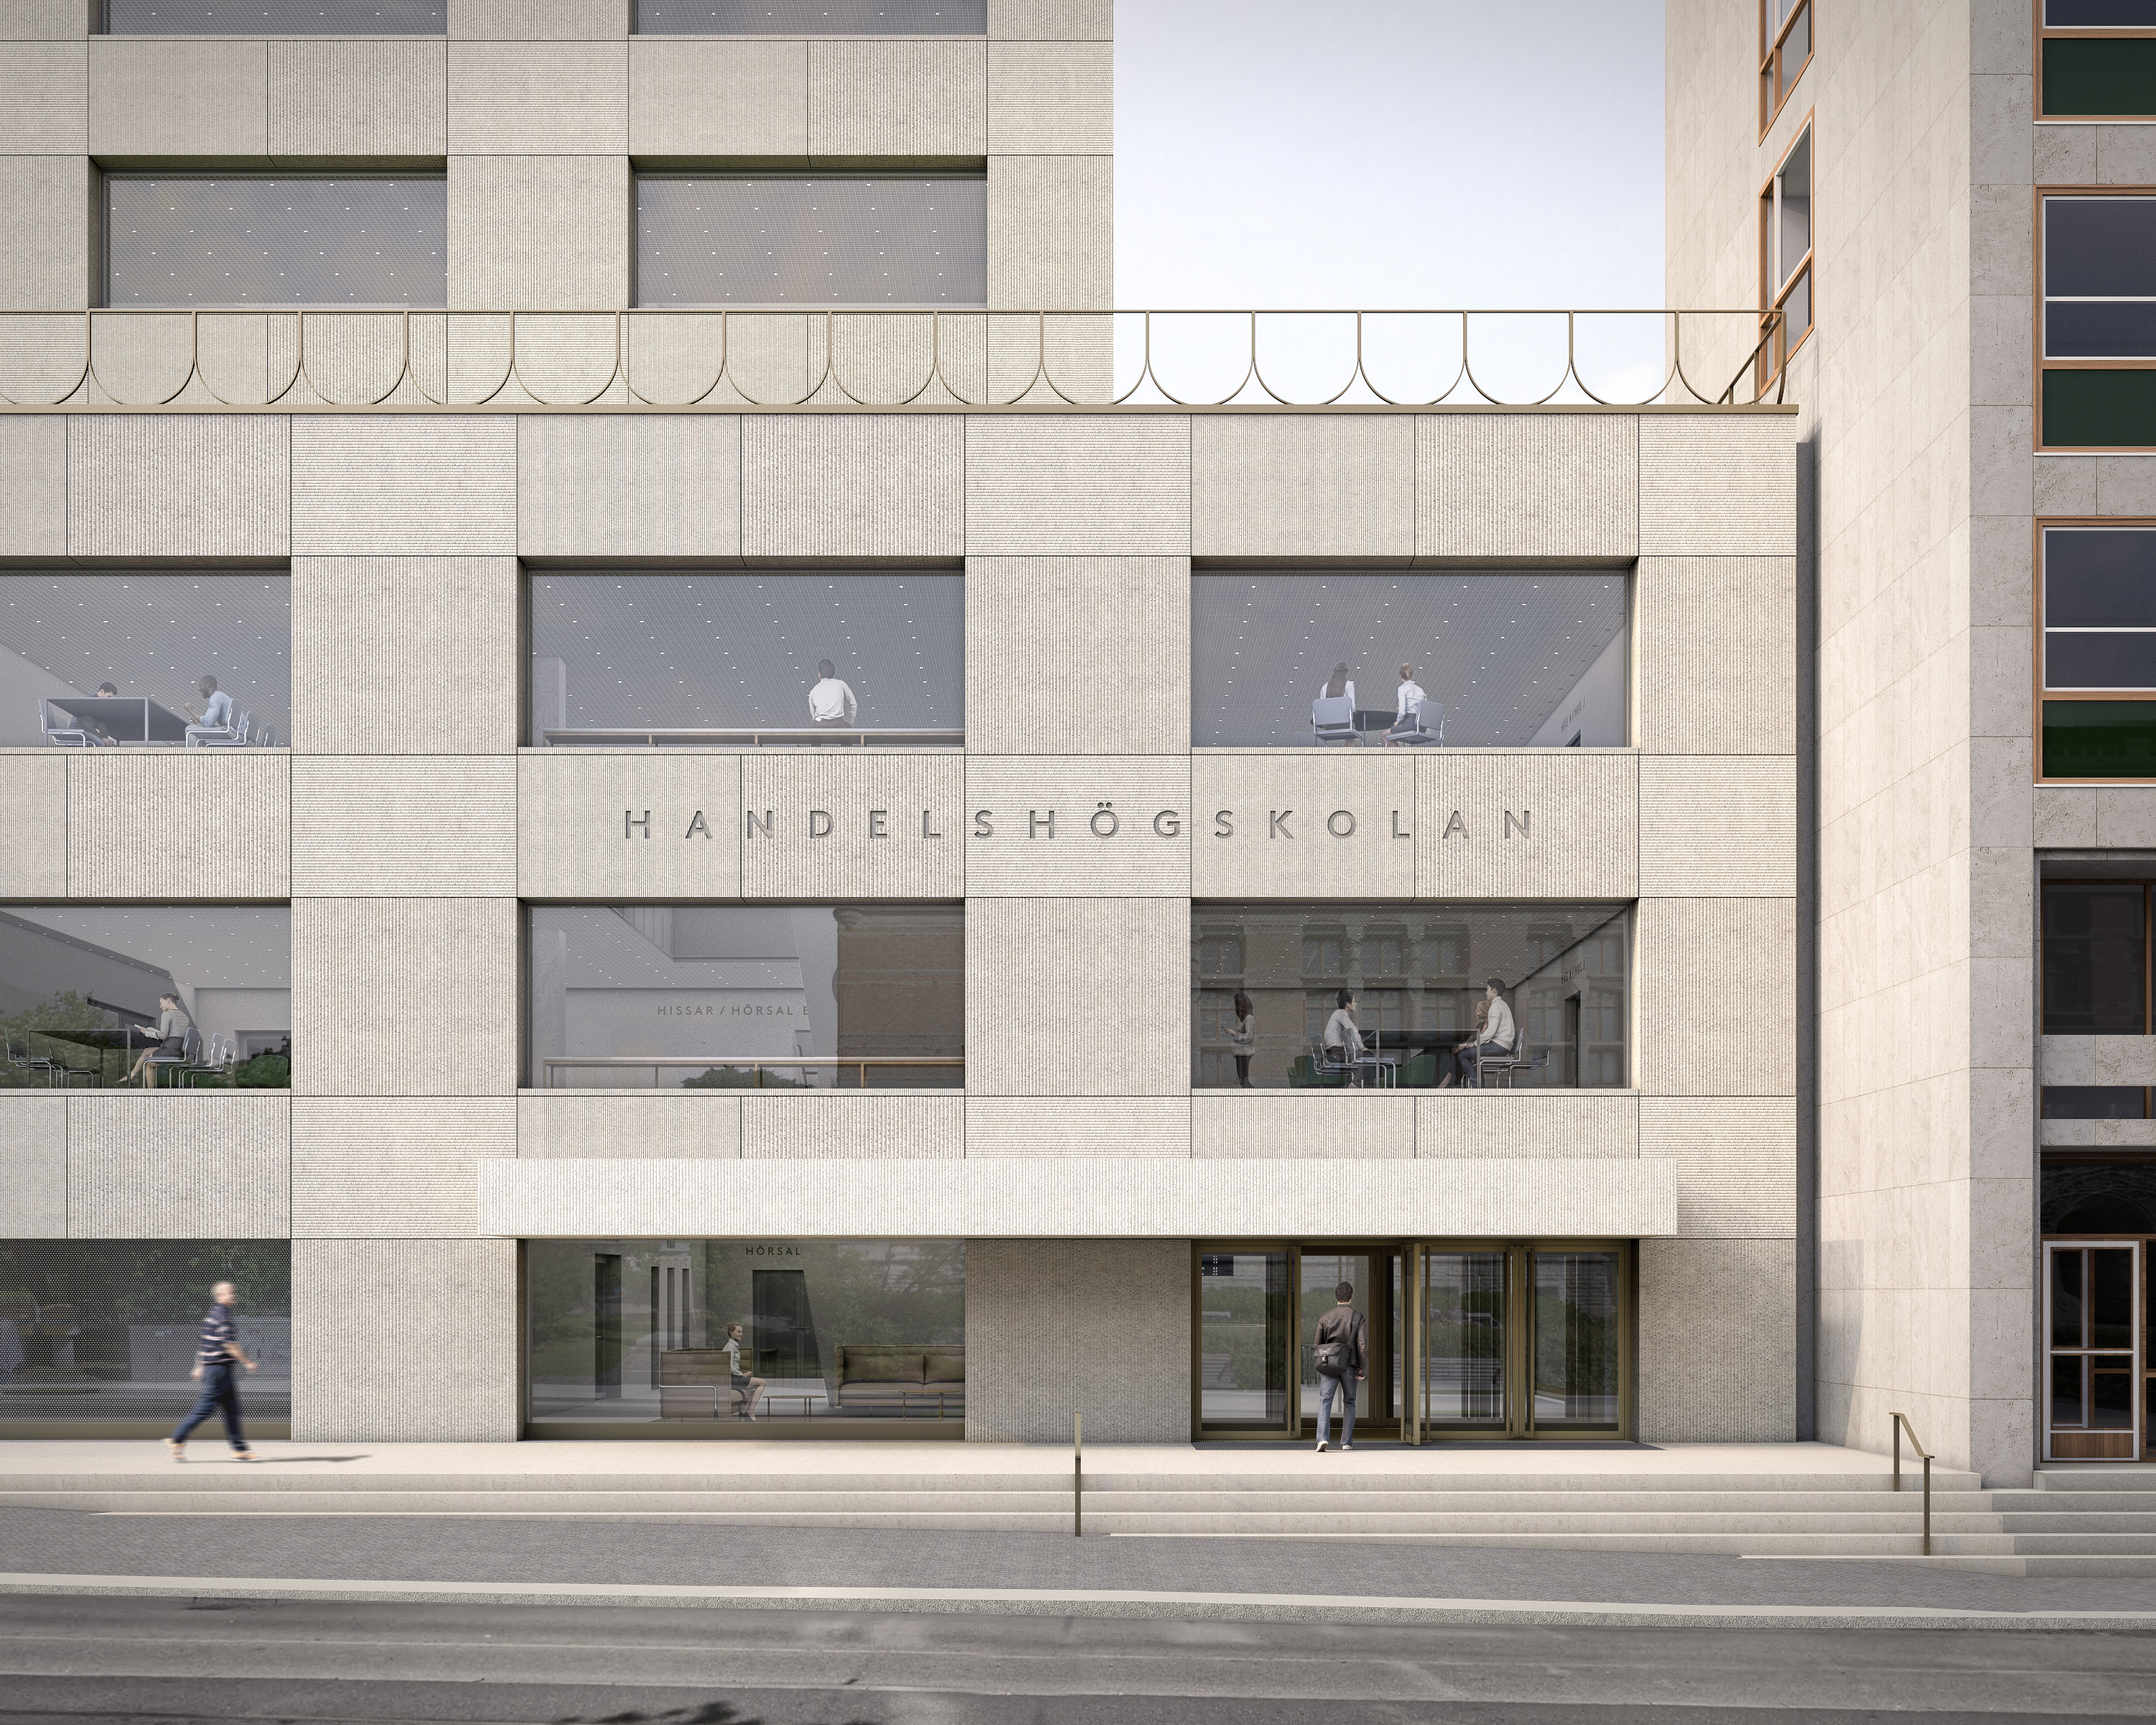 Ny byggnad för Handelshögskolan i Göteborg. 